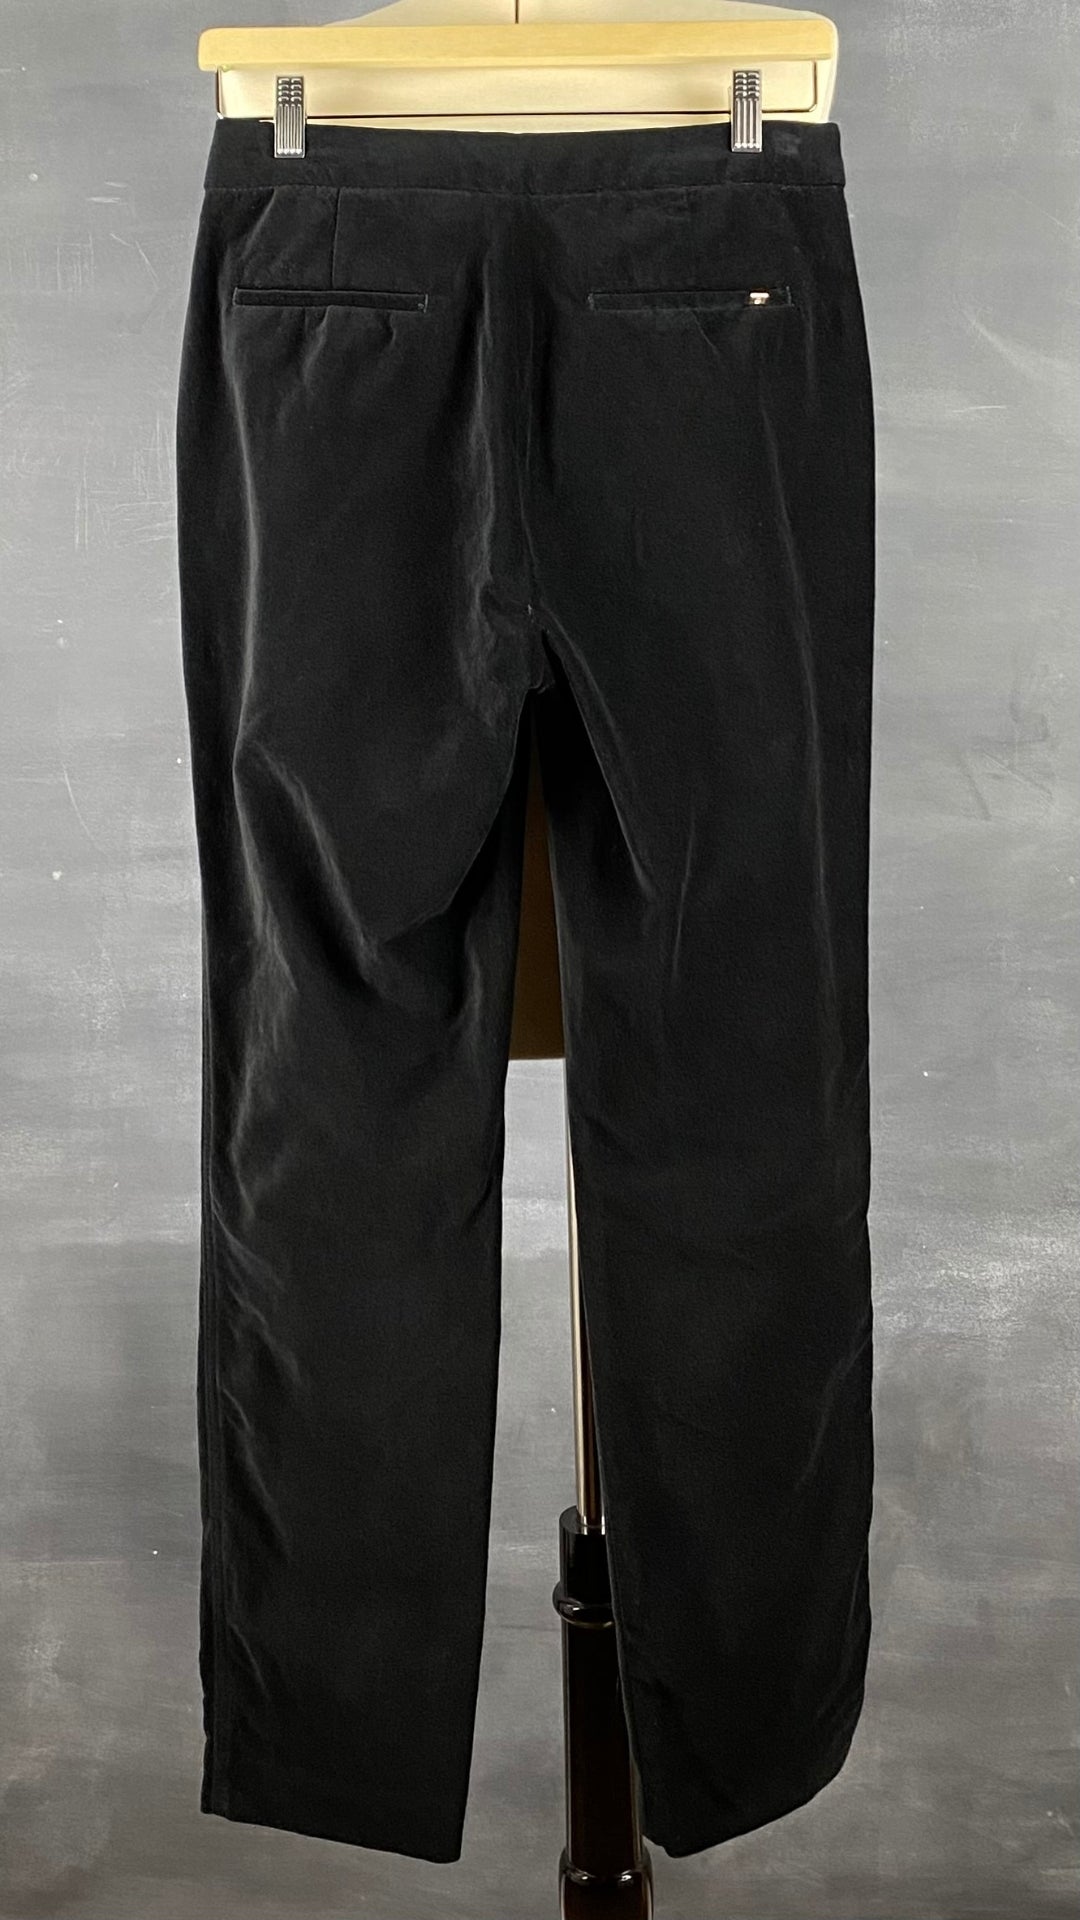 Pantalon en velours classique mais qui peut être très festif selon l'agencement. Vue de dos.